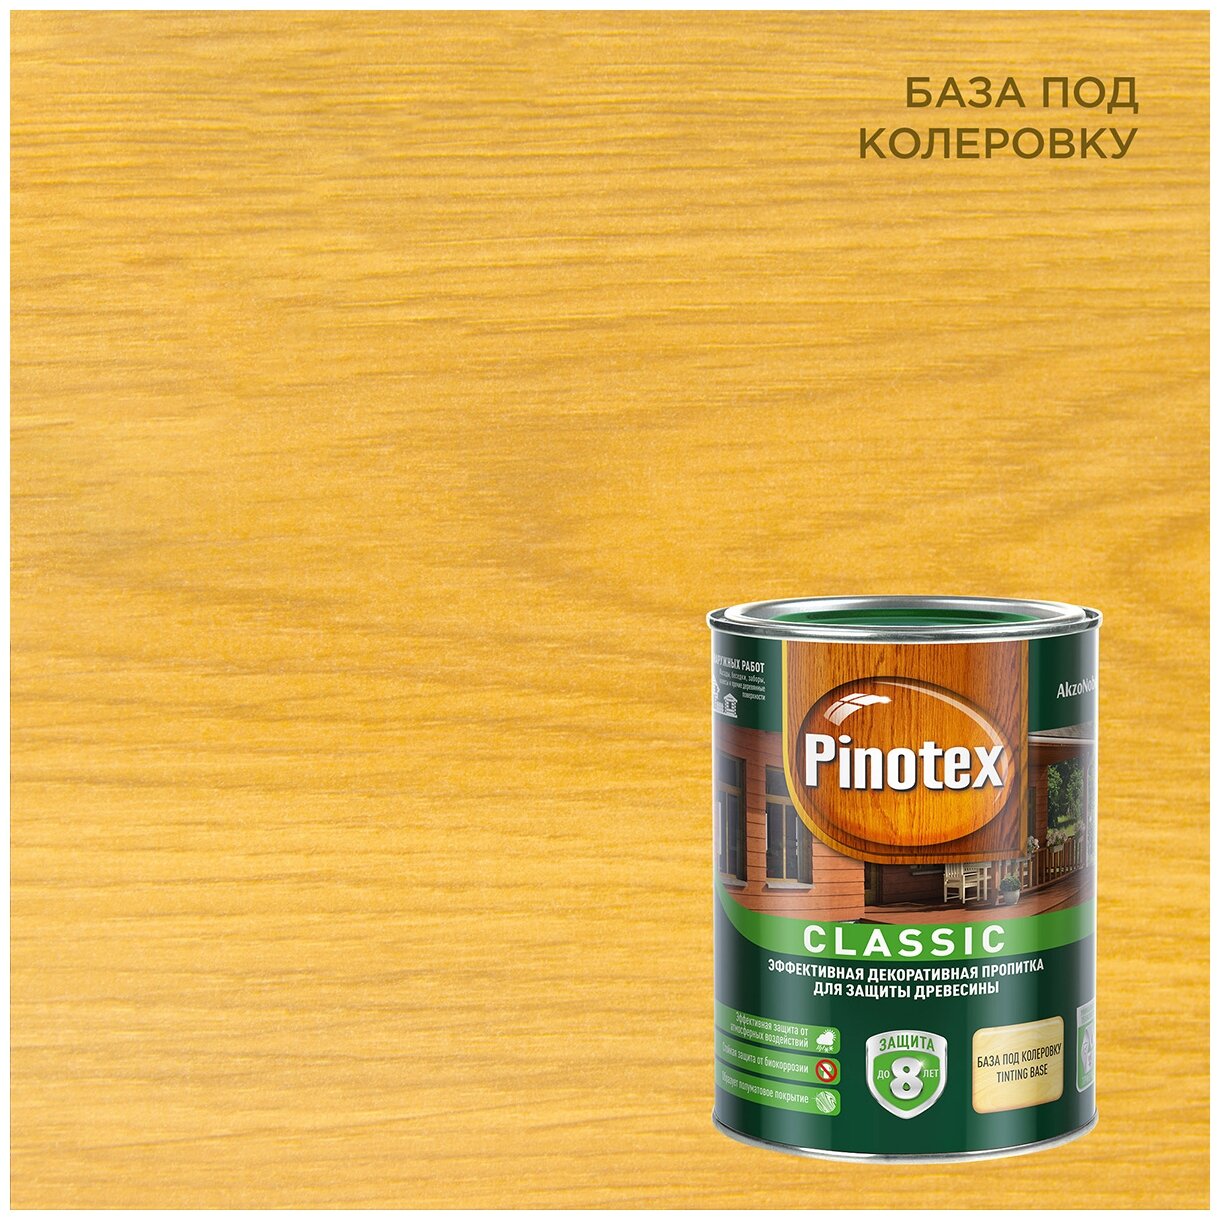 Пинотекс Классик антисептик для дерева бесцветный (1л) / PINOTEX Classic декоративная пропитка по дереву прозрачная под колеровку (1л)